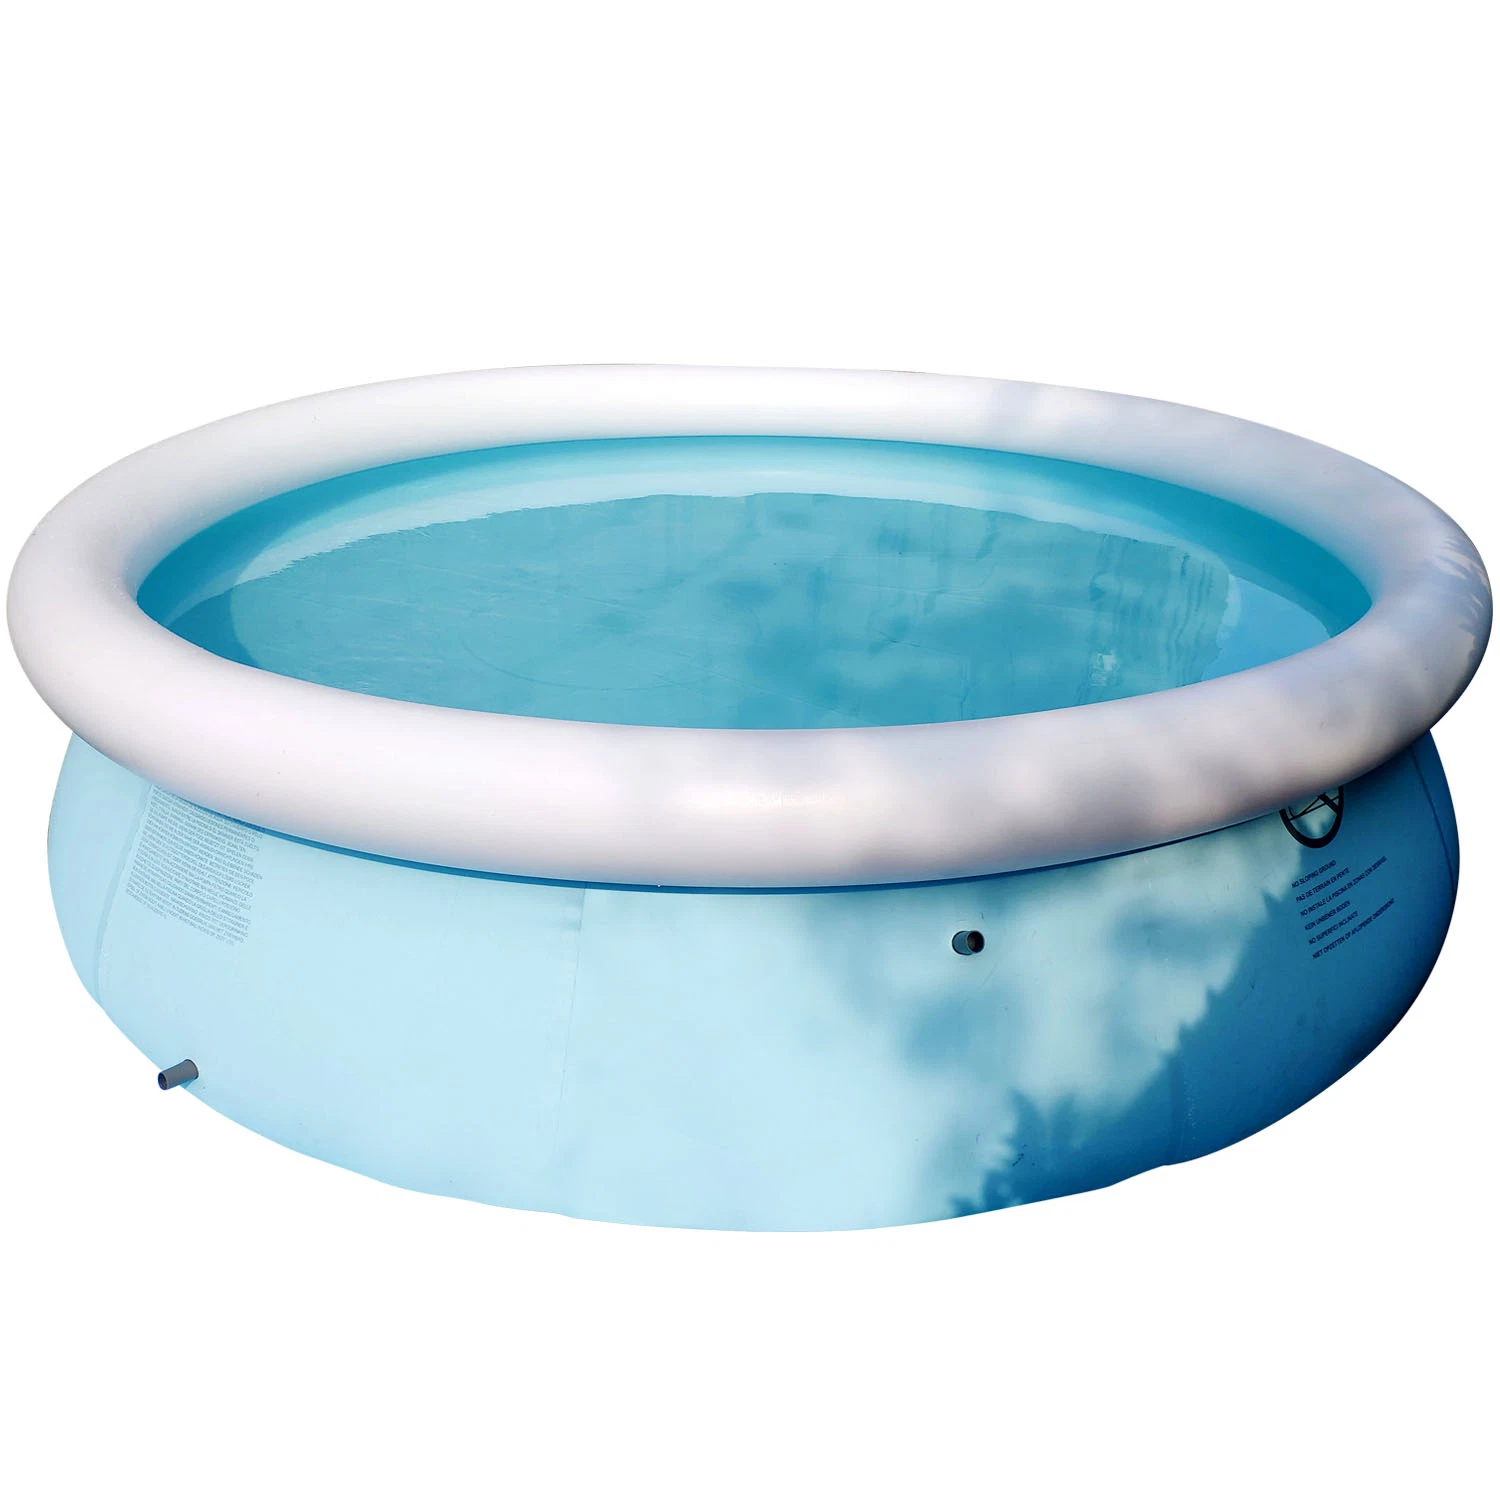 دفسبو فوق الحديقة الأرضية حمام سباحة داخلى مطاطي مستدير/ وعاء وعاء حوض السباحة PVC المربع سهل التركيب معه المرشح والسلم